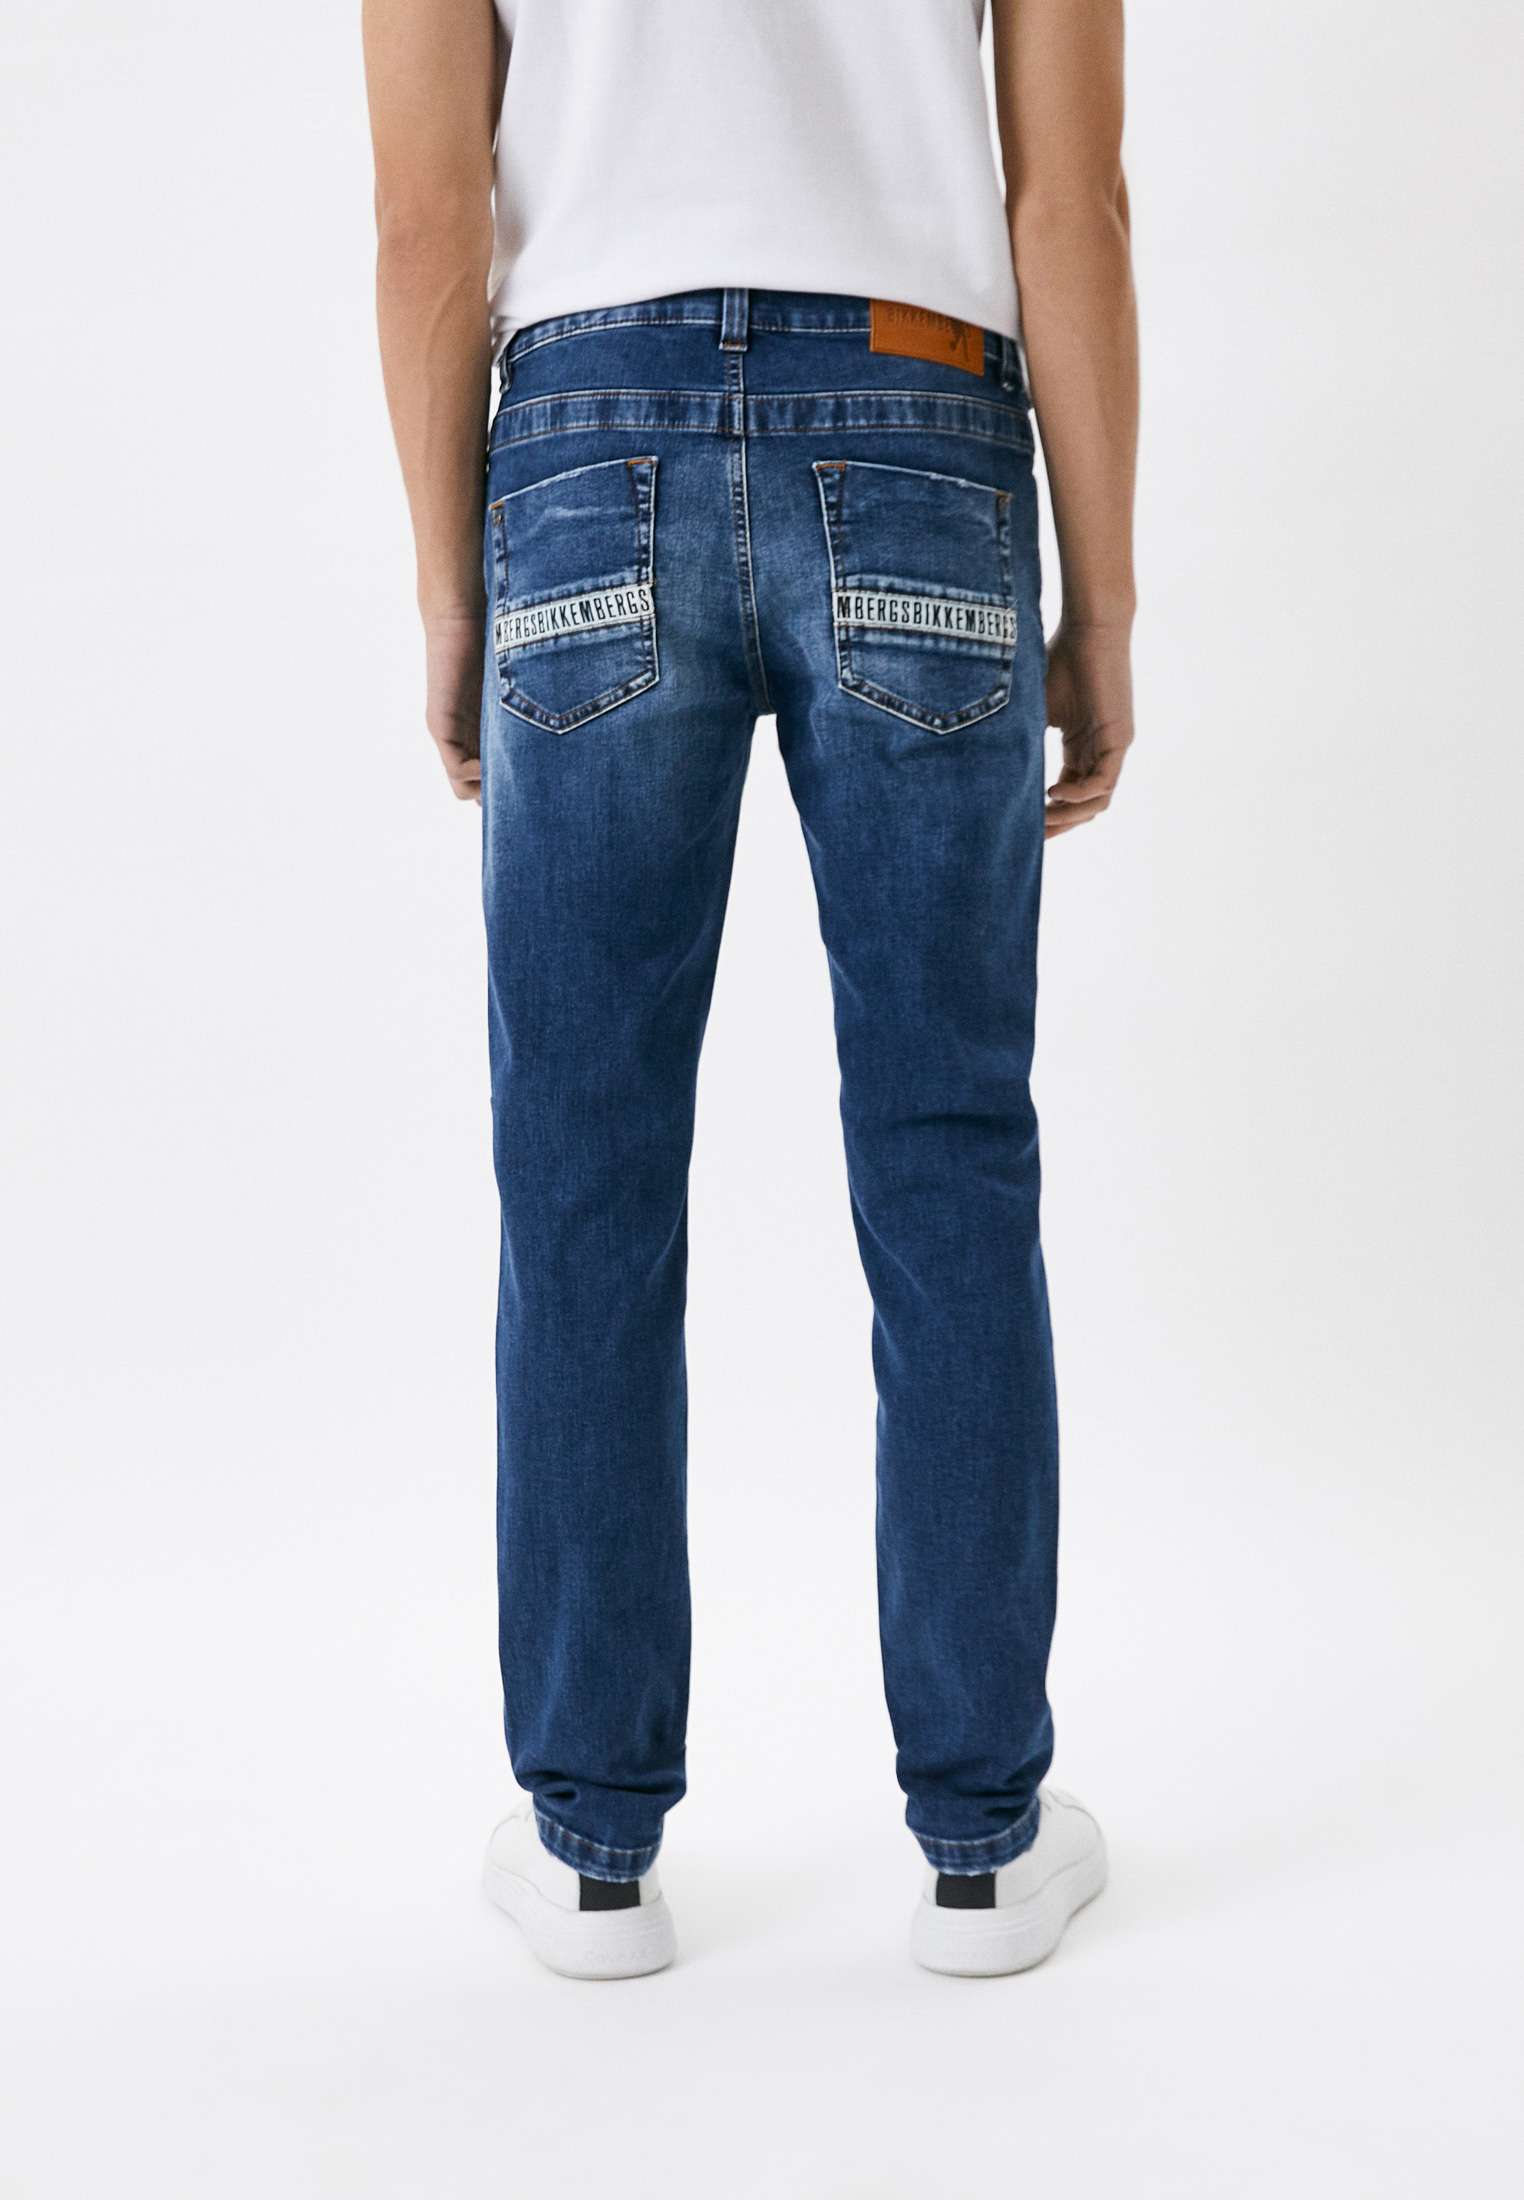 Мужские зауженные джинсы Bikkembergs (Биккембергс) CQ10188S3511: изображение 3